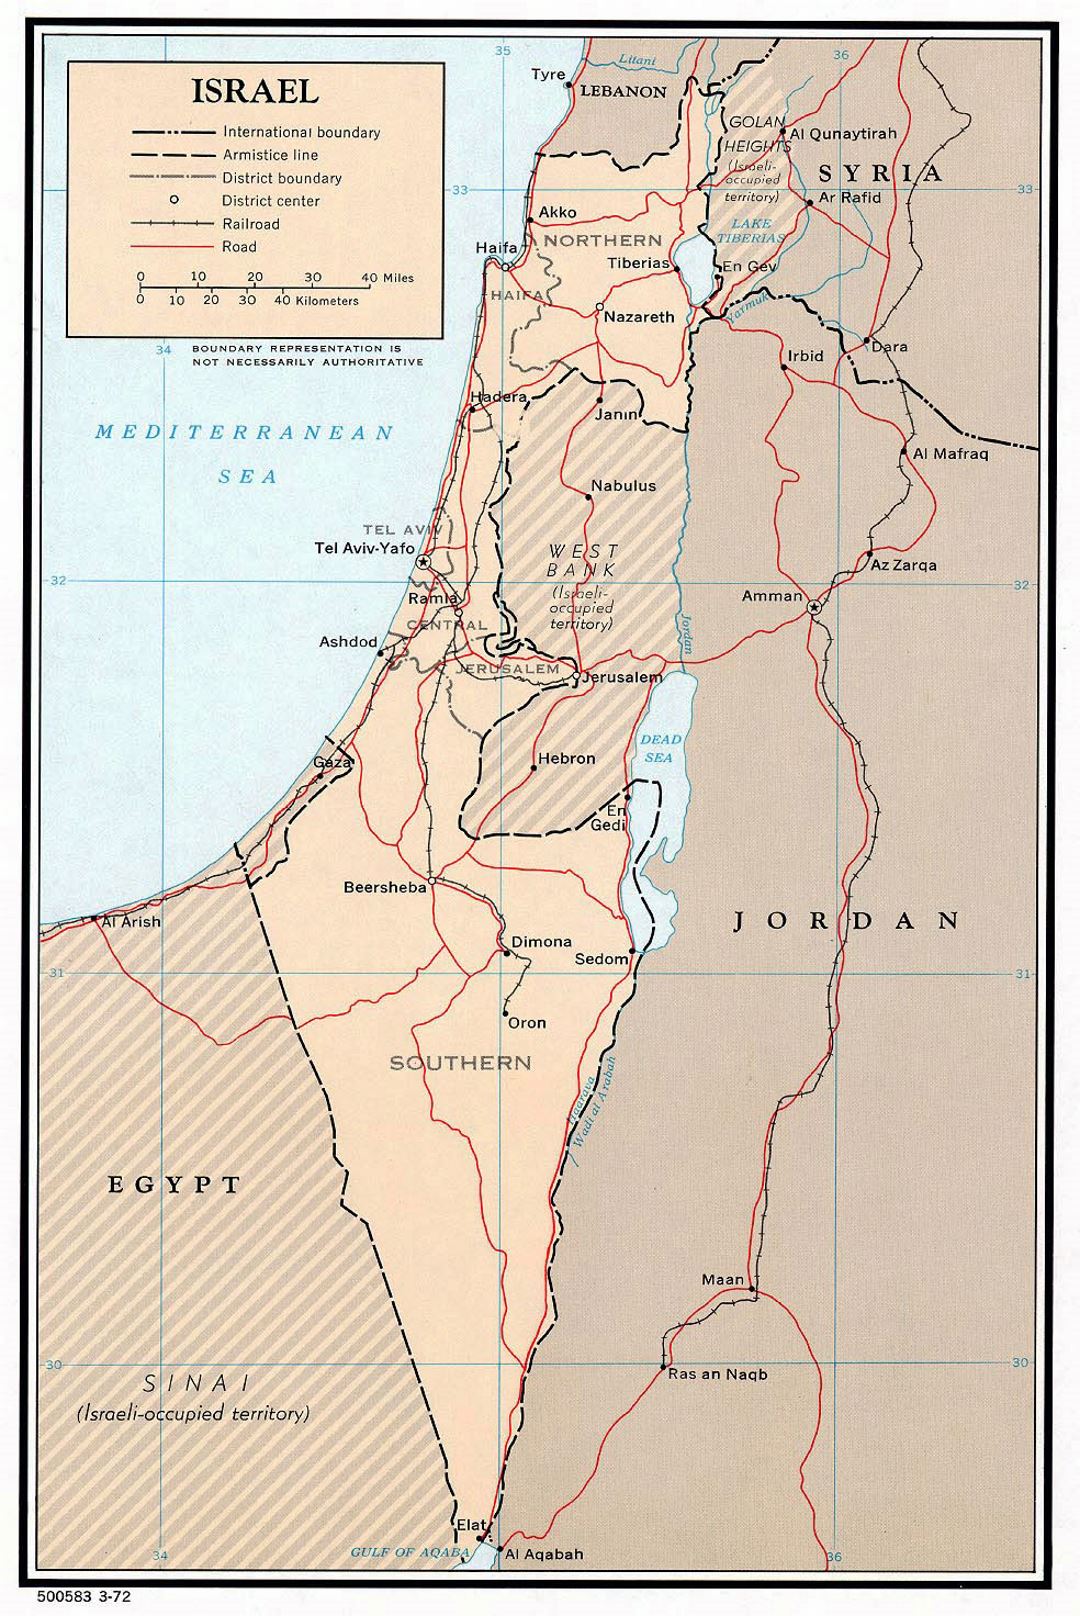 Детальная политическая и административная карта Израиля с дорогами, железными дорогами и крупными городами - 1972